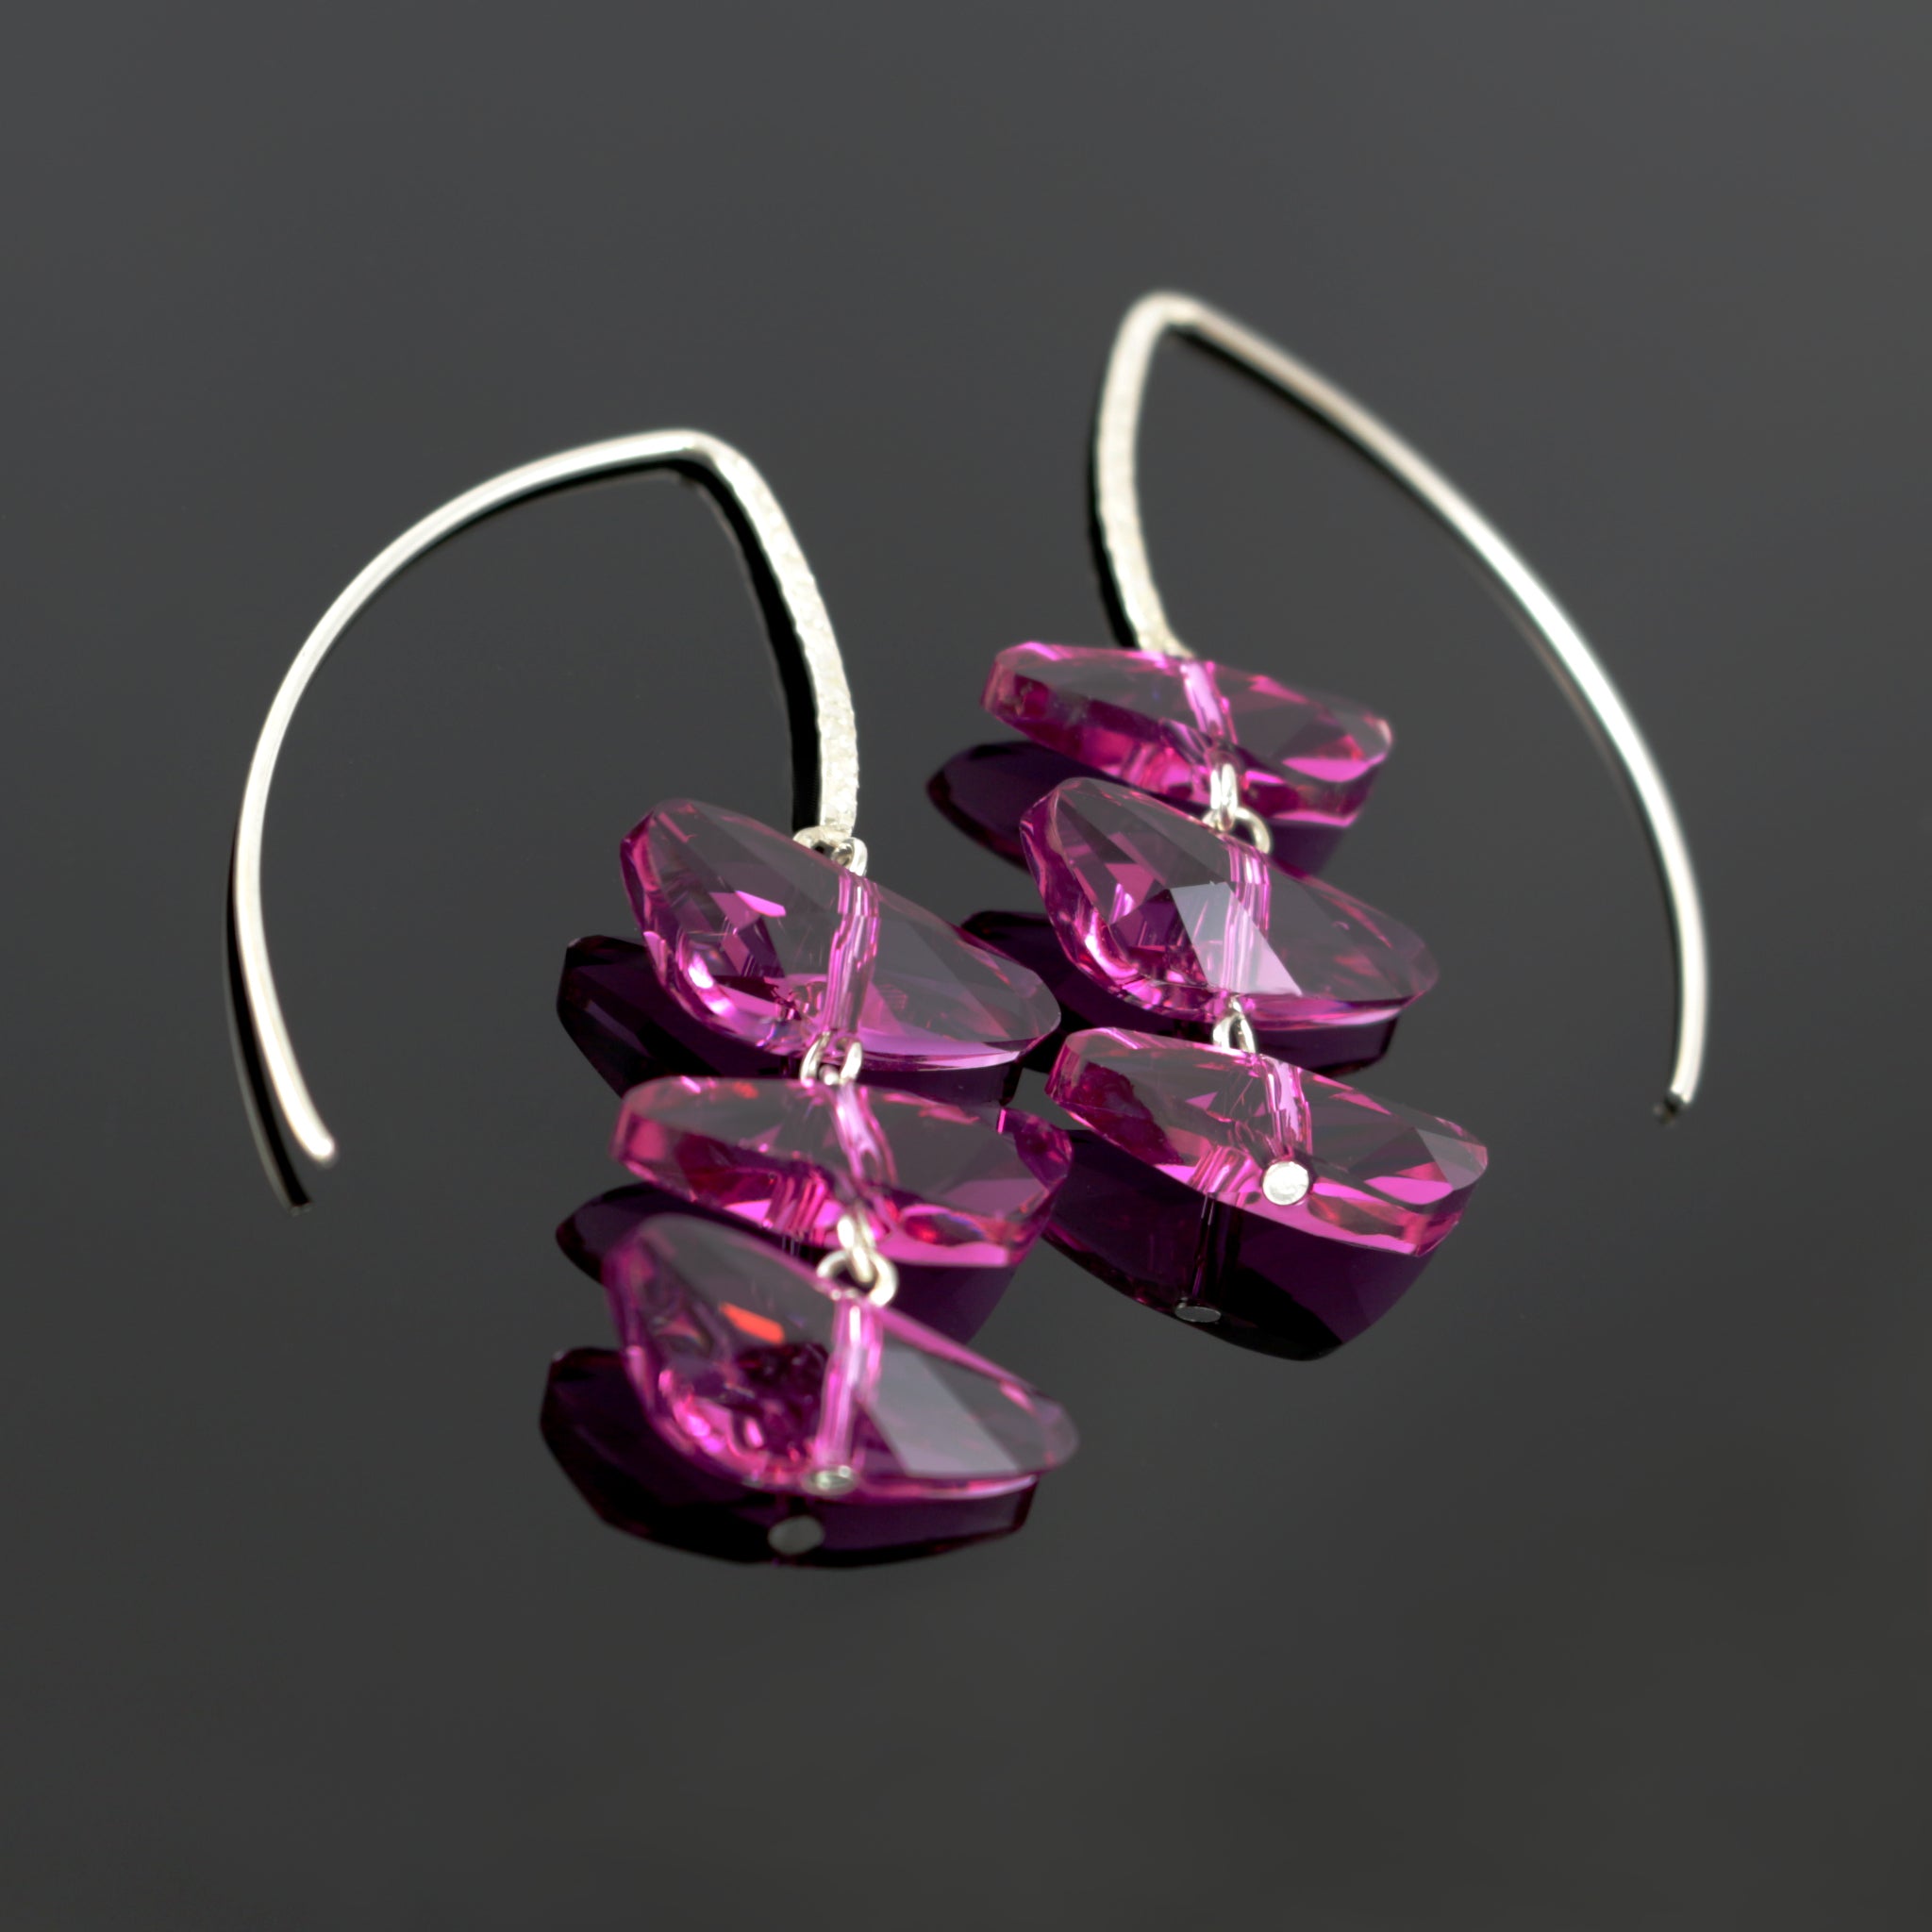 Reflections Earrings in Fuchsia